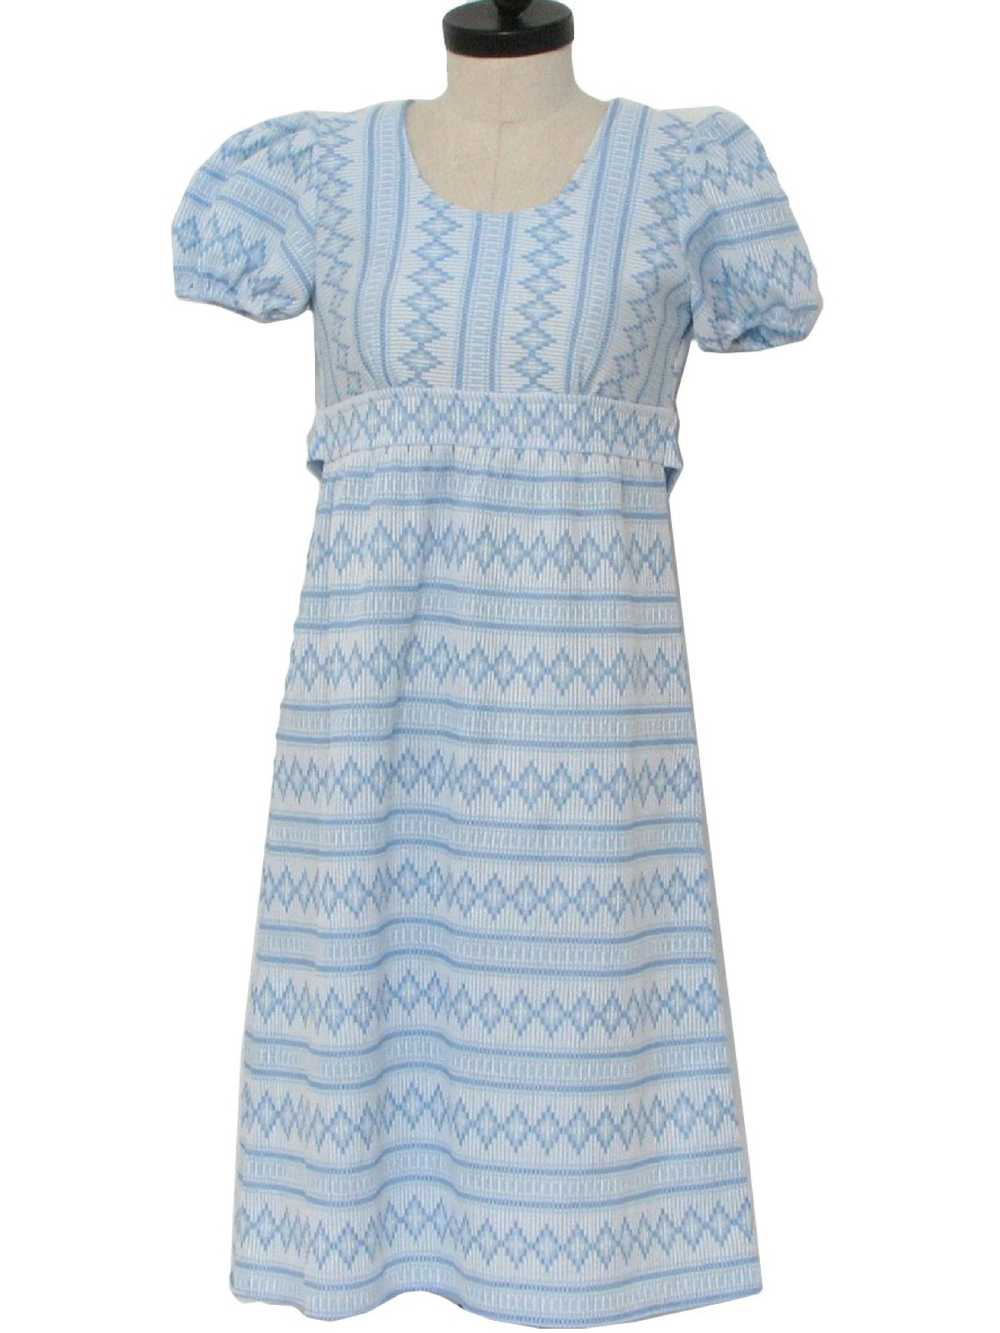 1960's Knit Dress - image 1